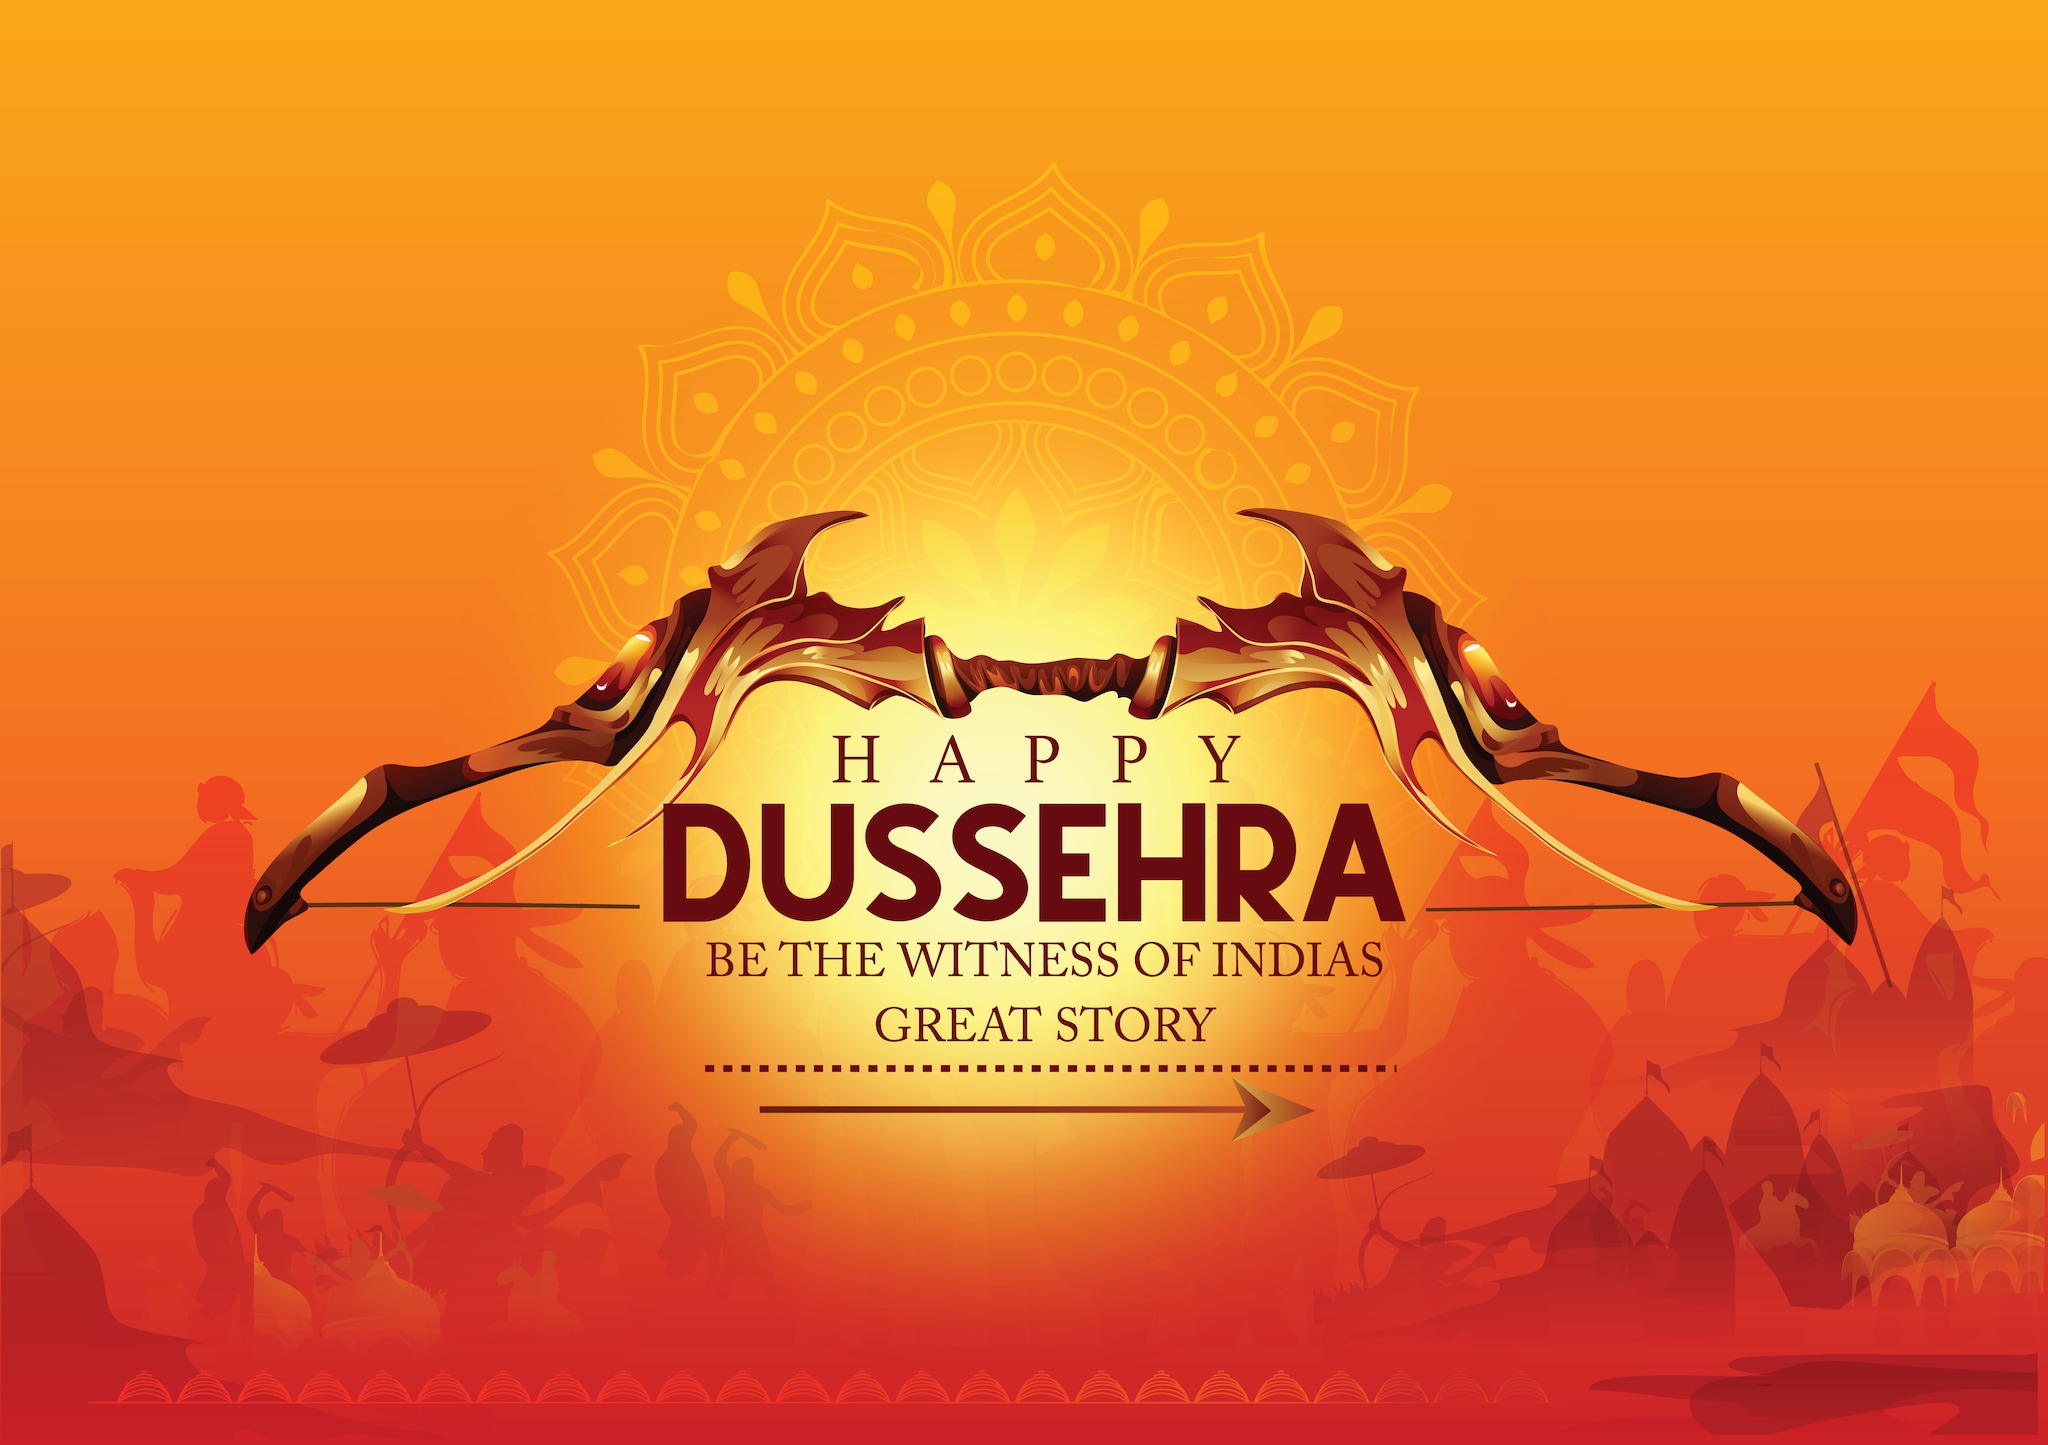 Dussehra Greeting PNG Transparent, Dussehra Greeting, Happy Dussehra,  Dussehra Card PNG Image For Free Download